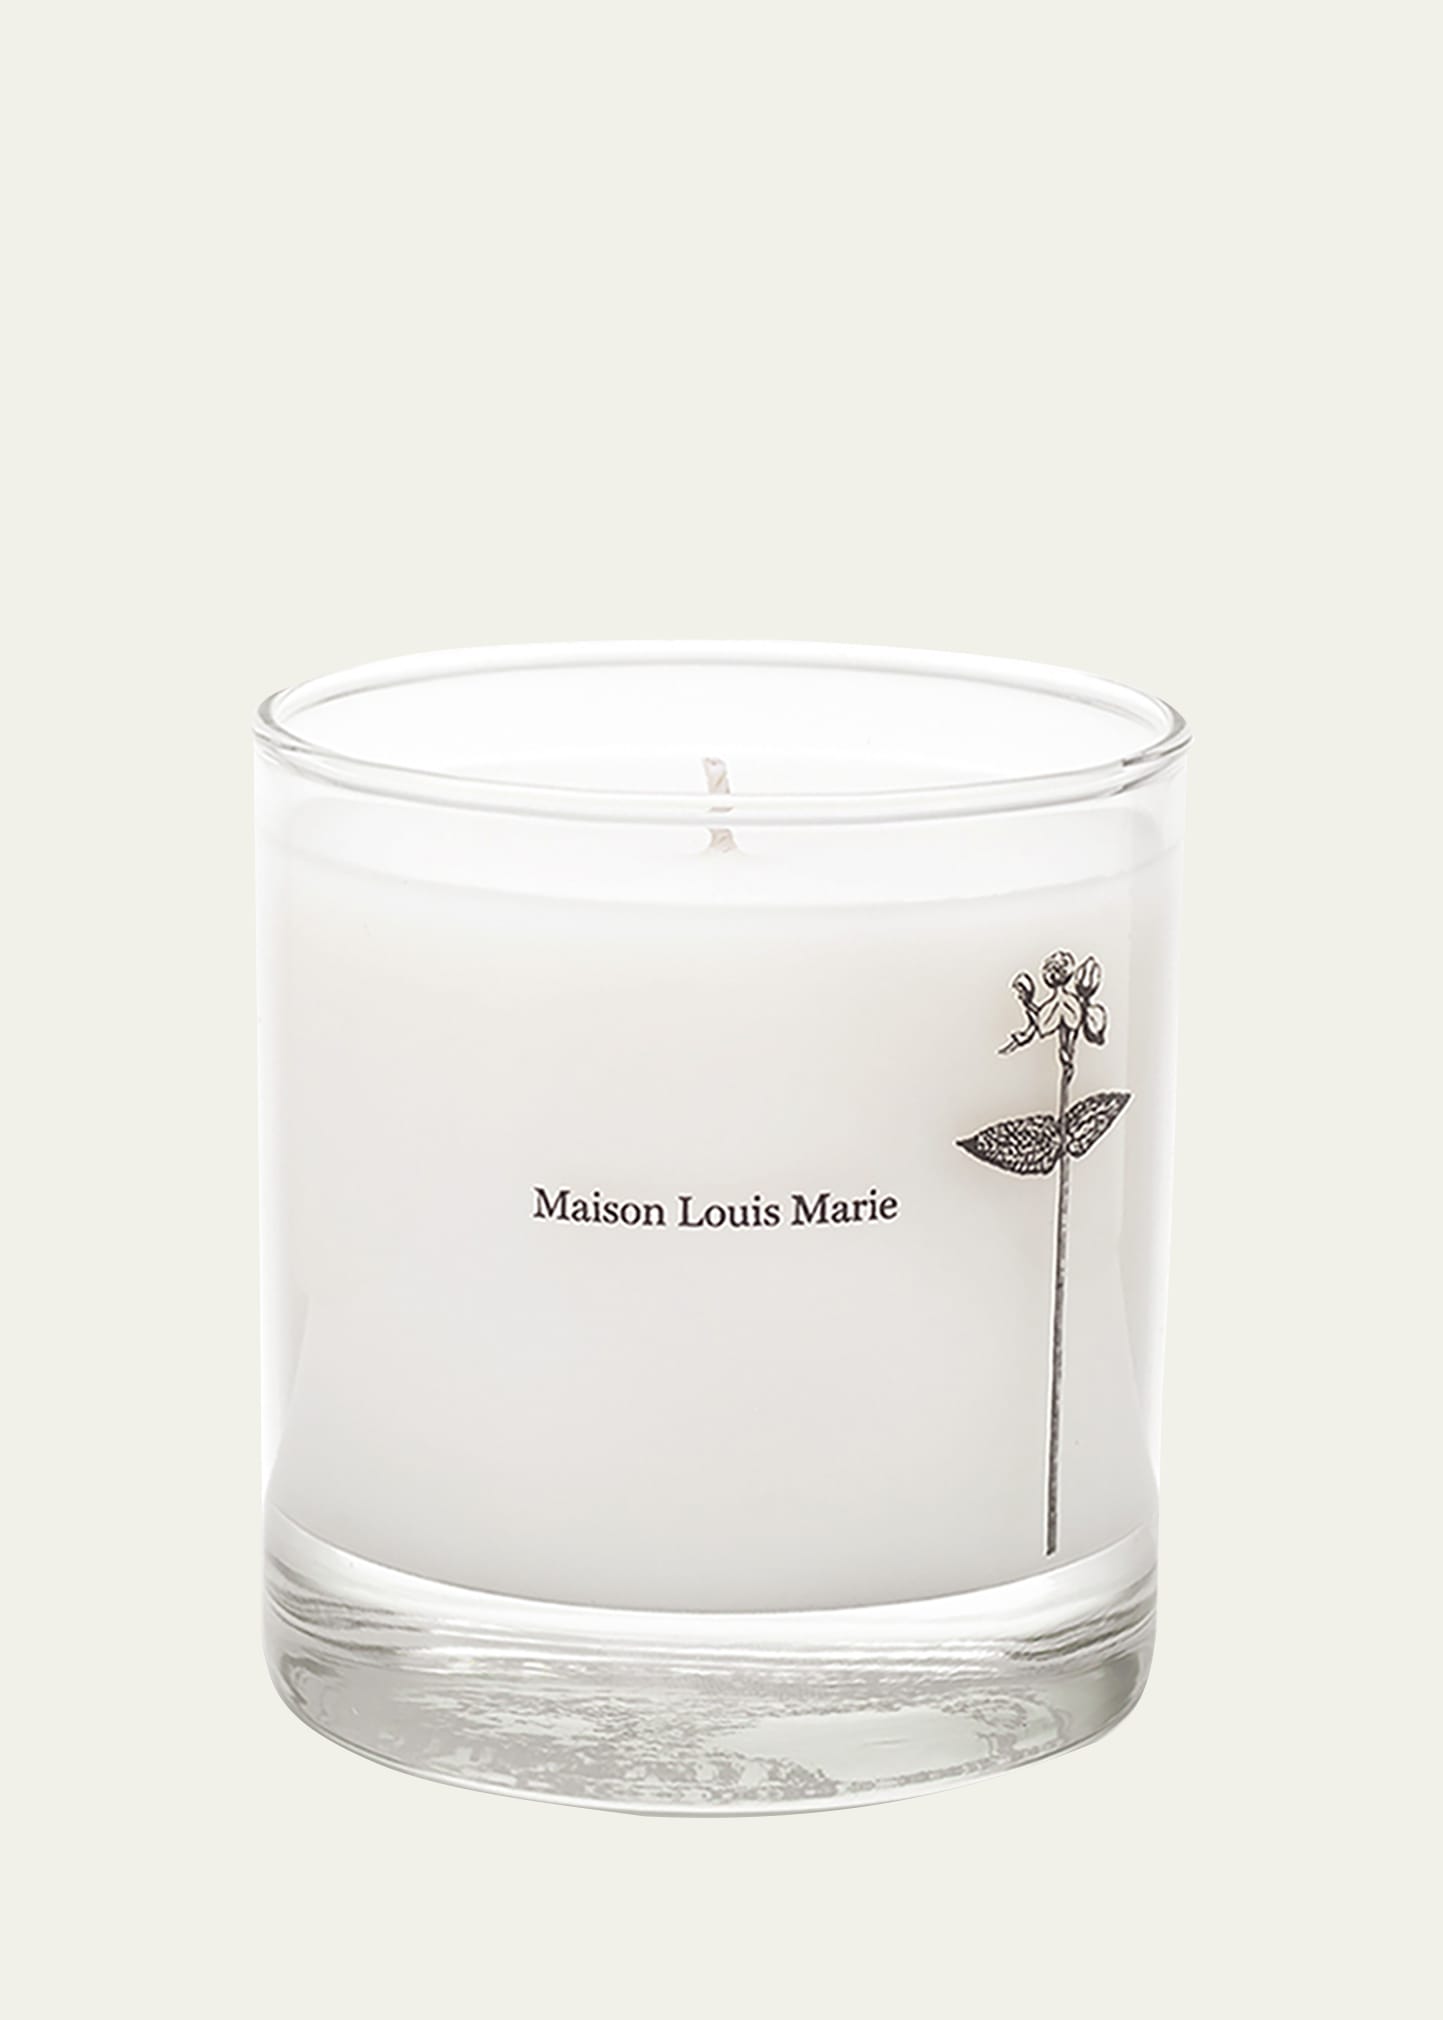 Maison Louis Marie 8.5 oz. Antidris Cassis Candle